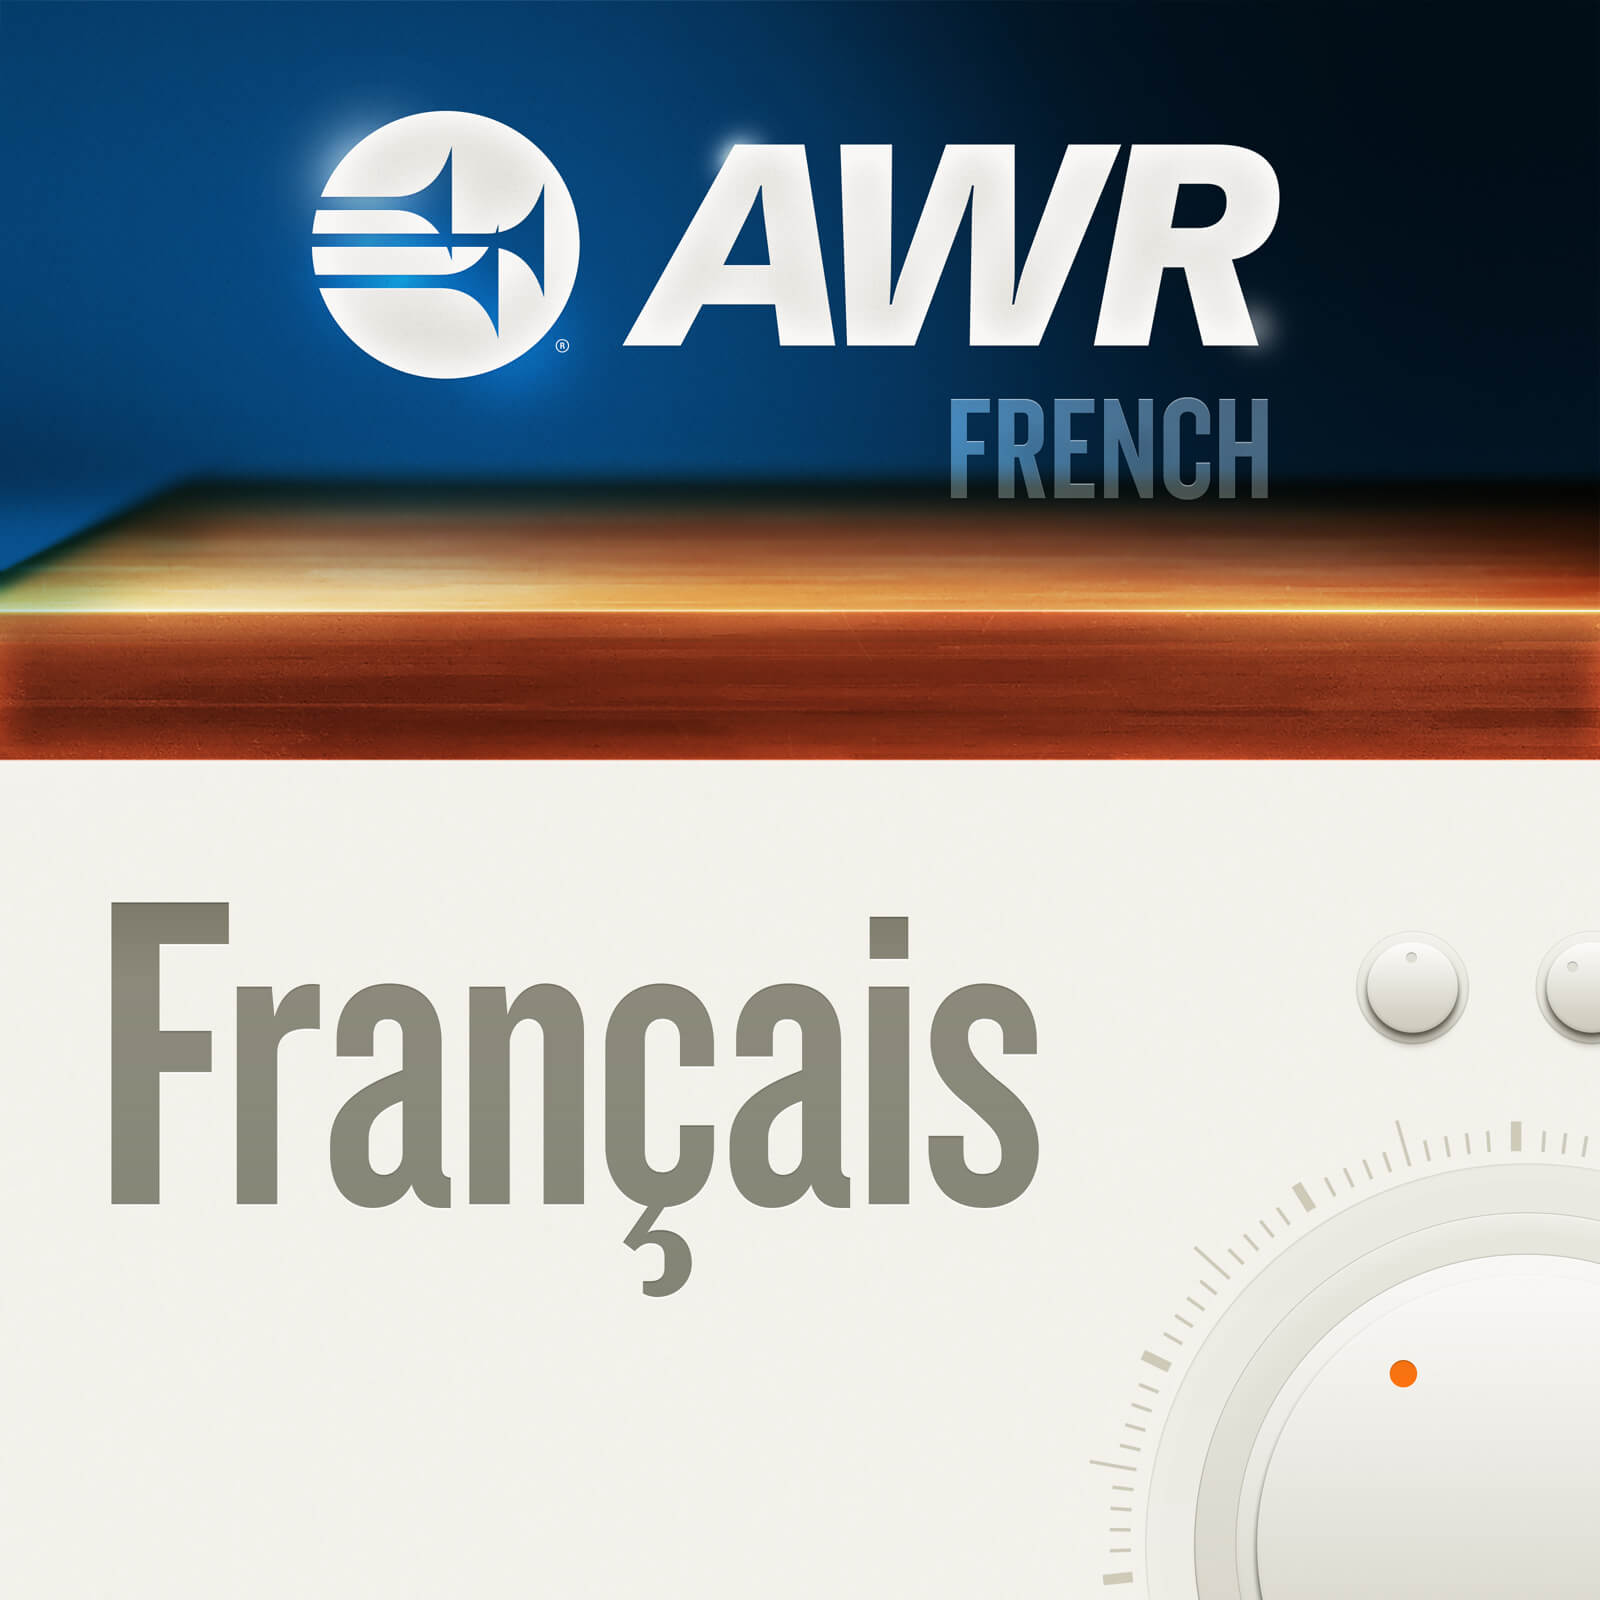 AWR French / Français (France): Le billet d'humeur